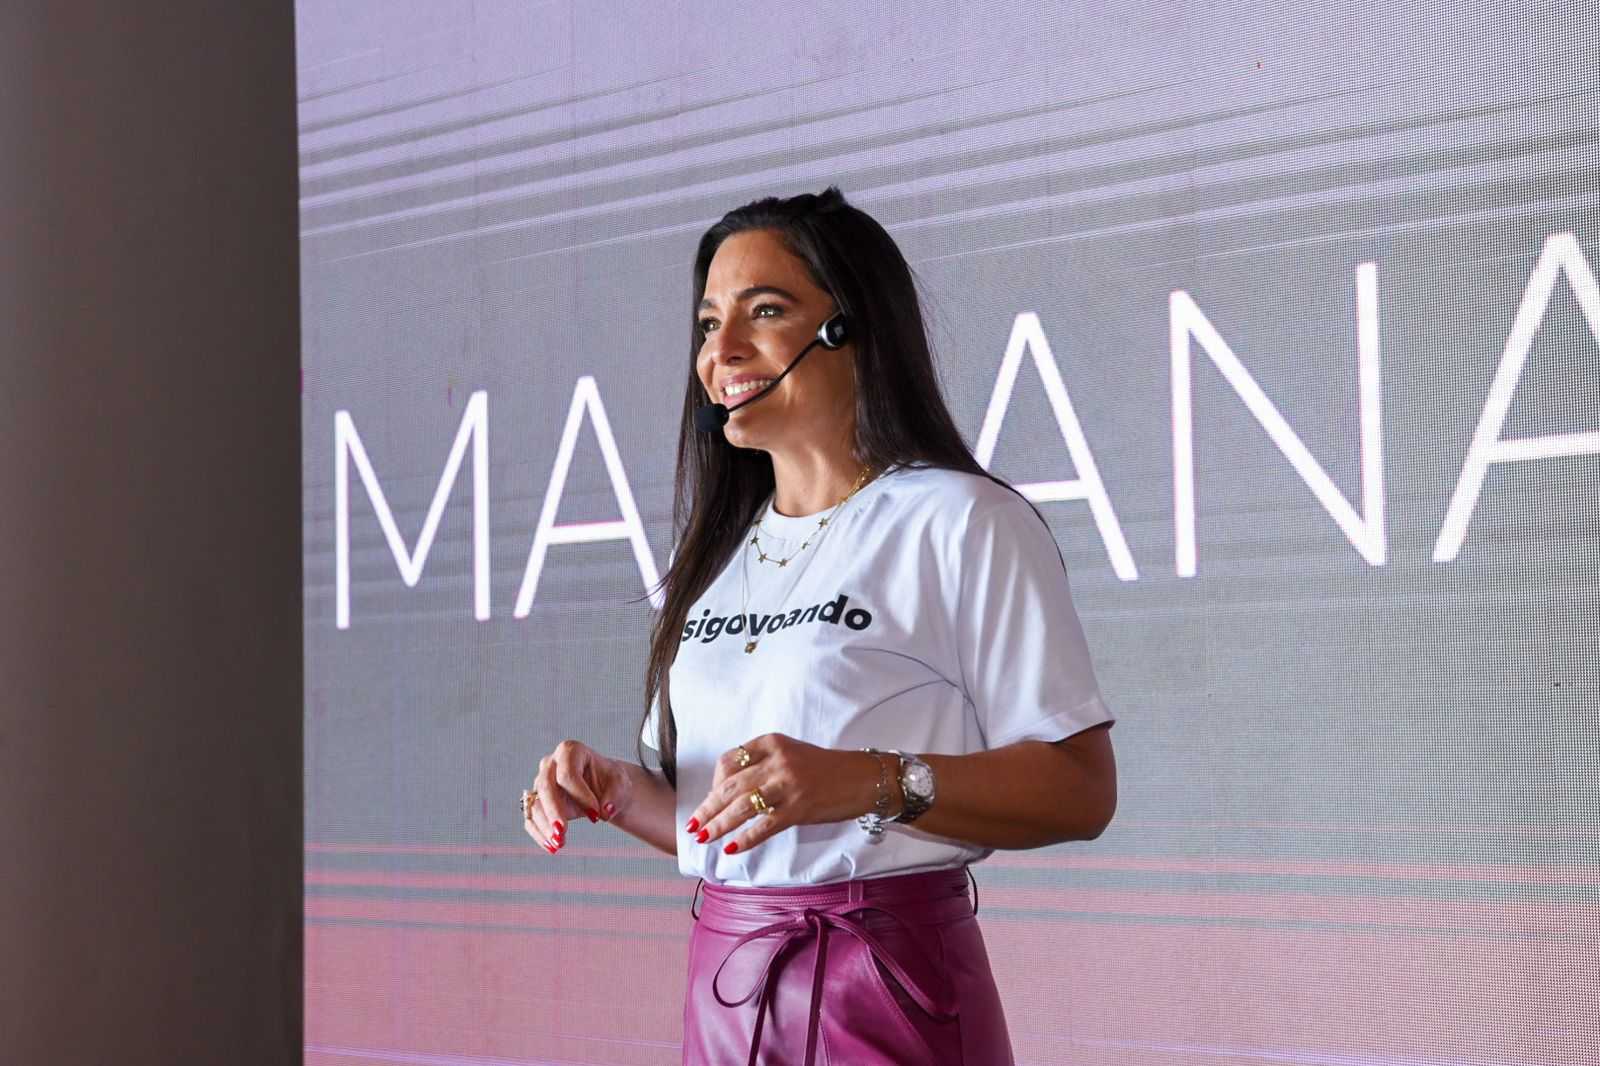 Homenageada no Almoço de Negócios do Alô Alô Bahia, Mariana Lisbôa chama atenção para a diversidade nos negócios